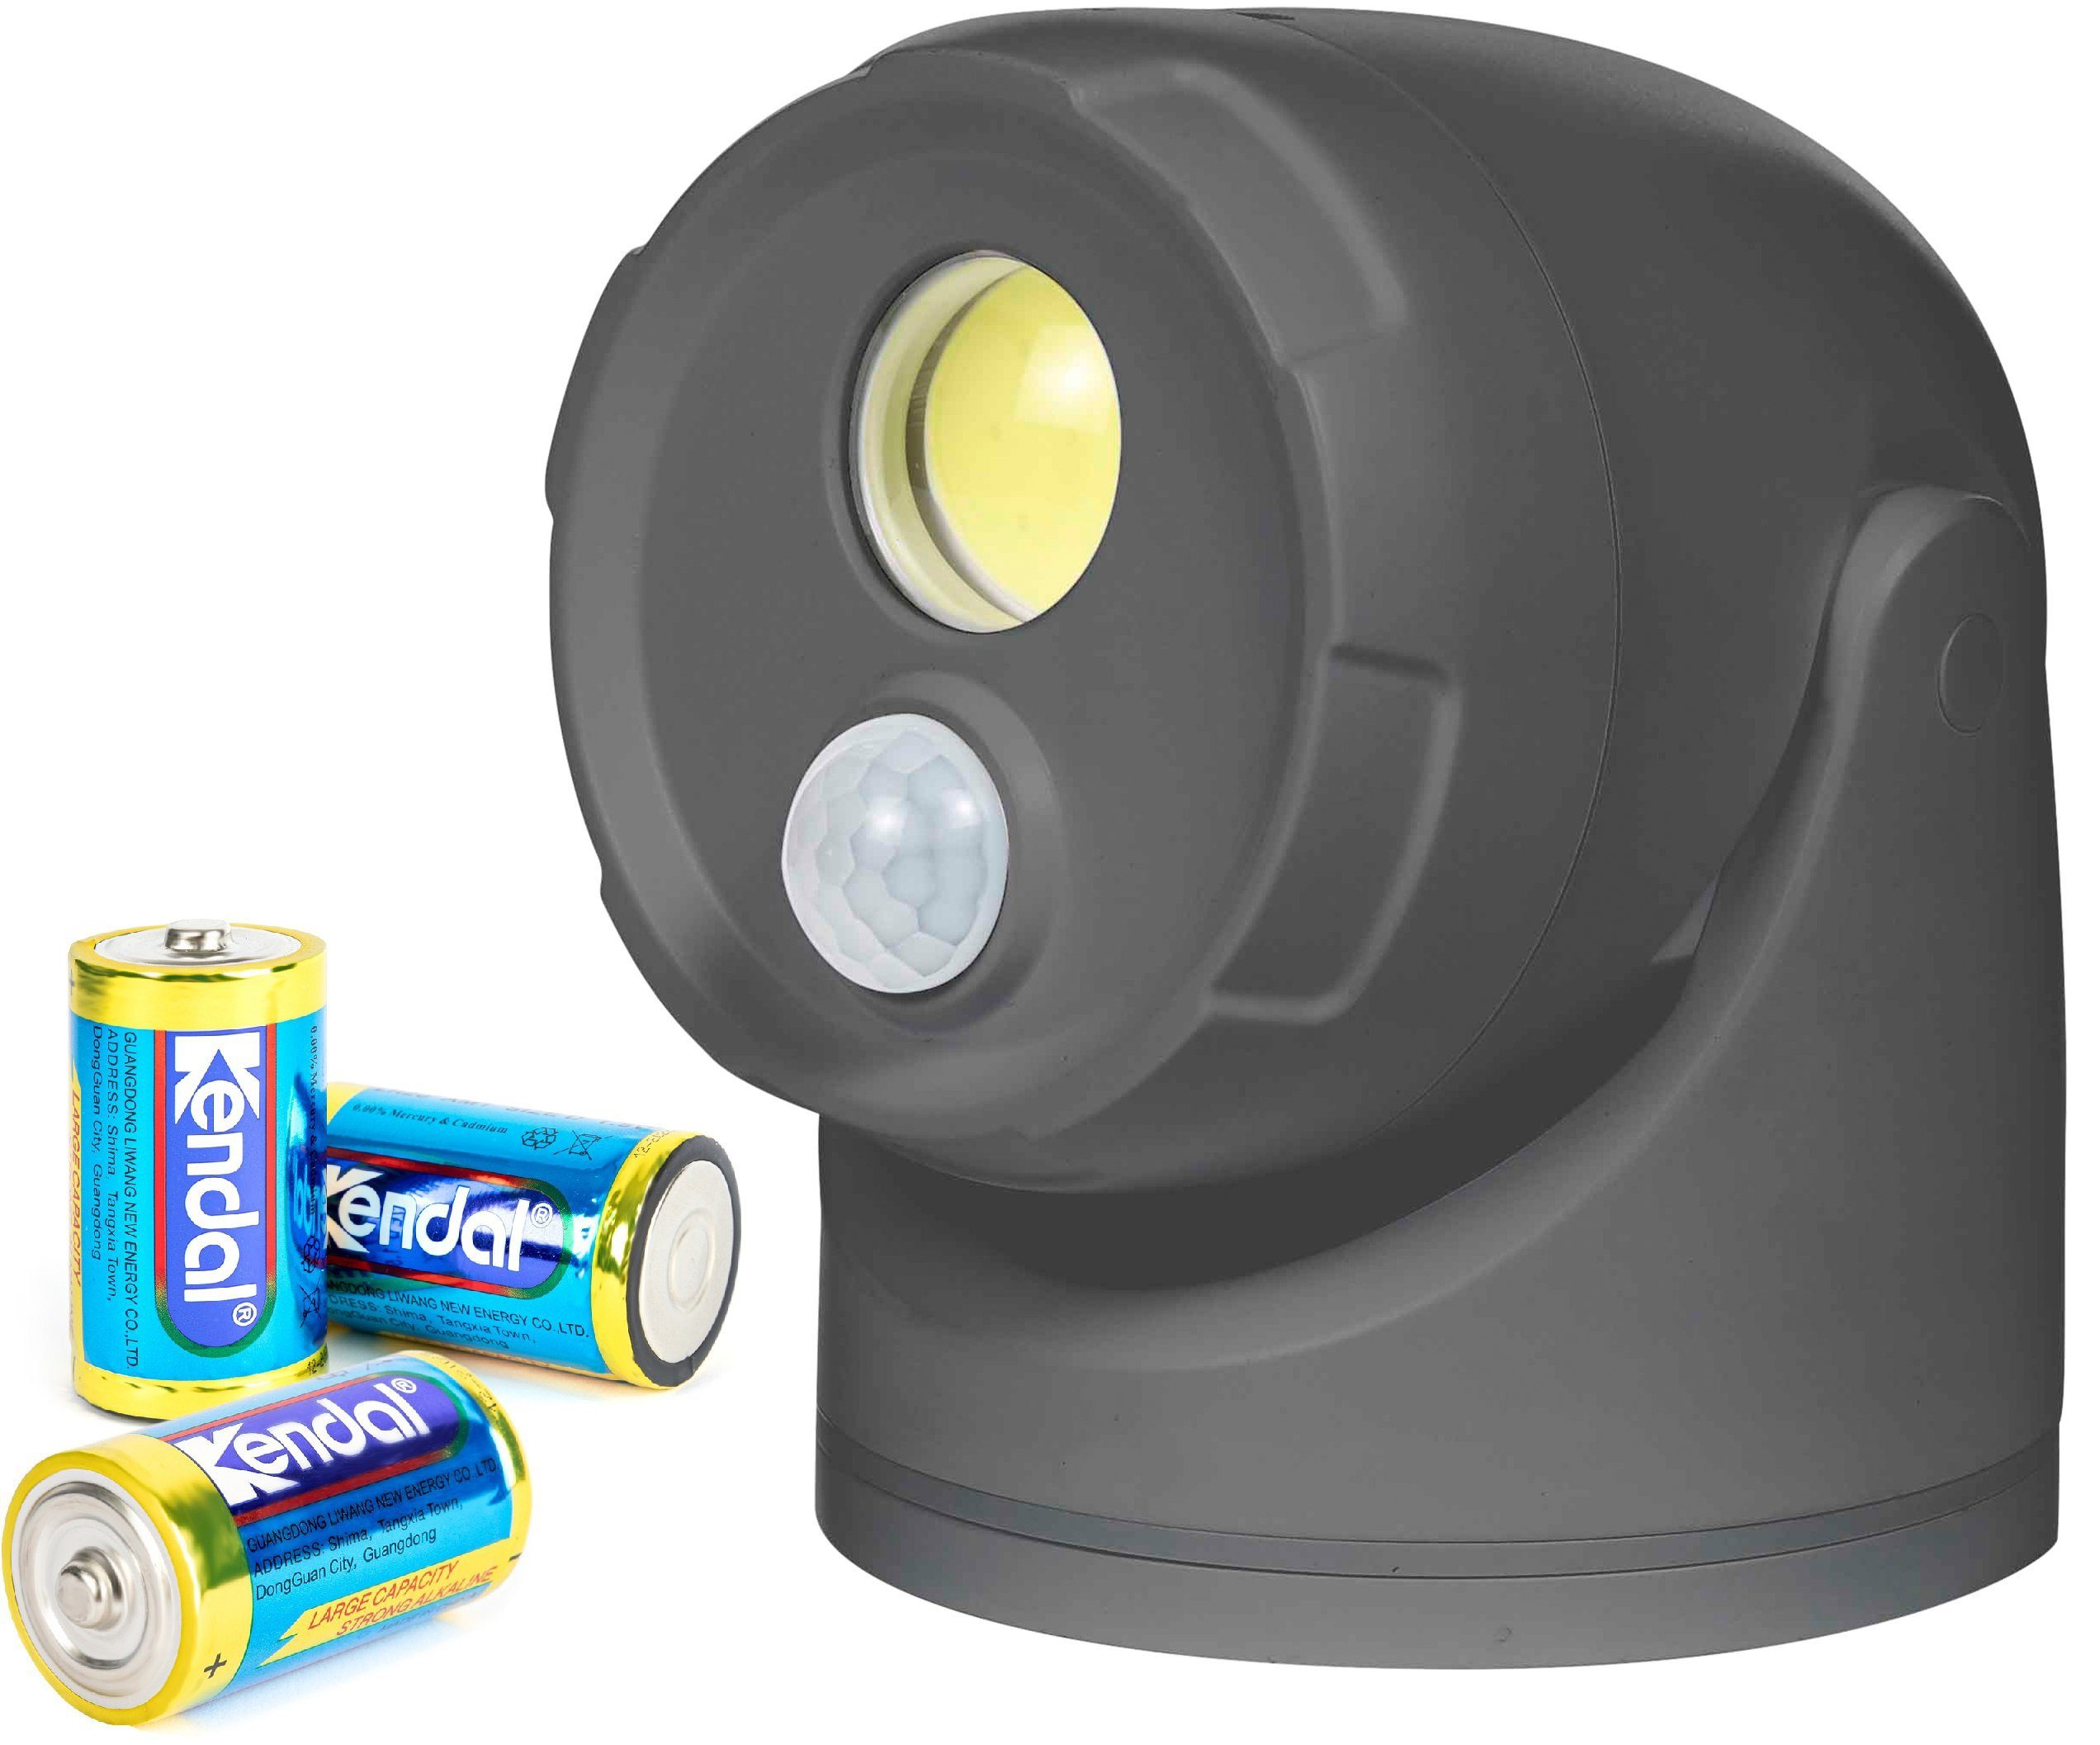 Northpoint Wandstrahler LED Batterie Spot Strahler Flutlicht Bewegungsmelder inkl. D-Batterien Grau mit Batterie